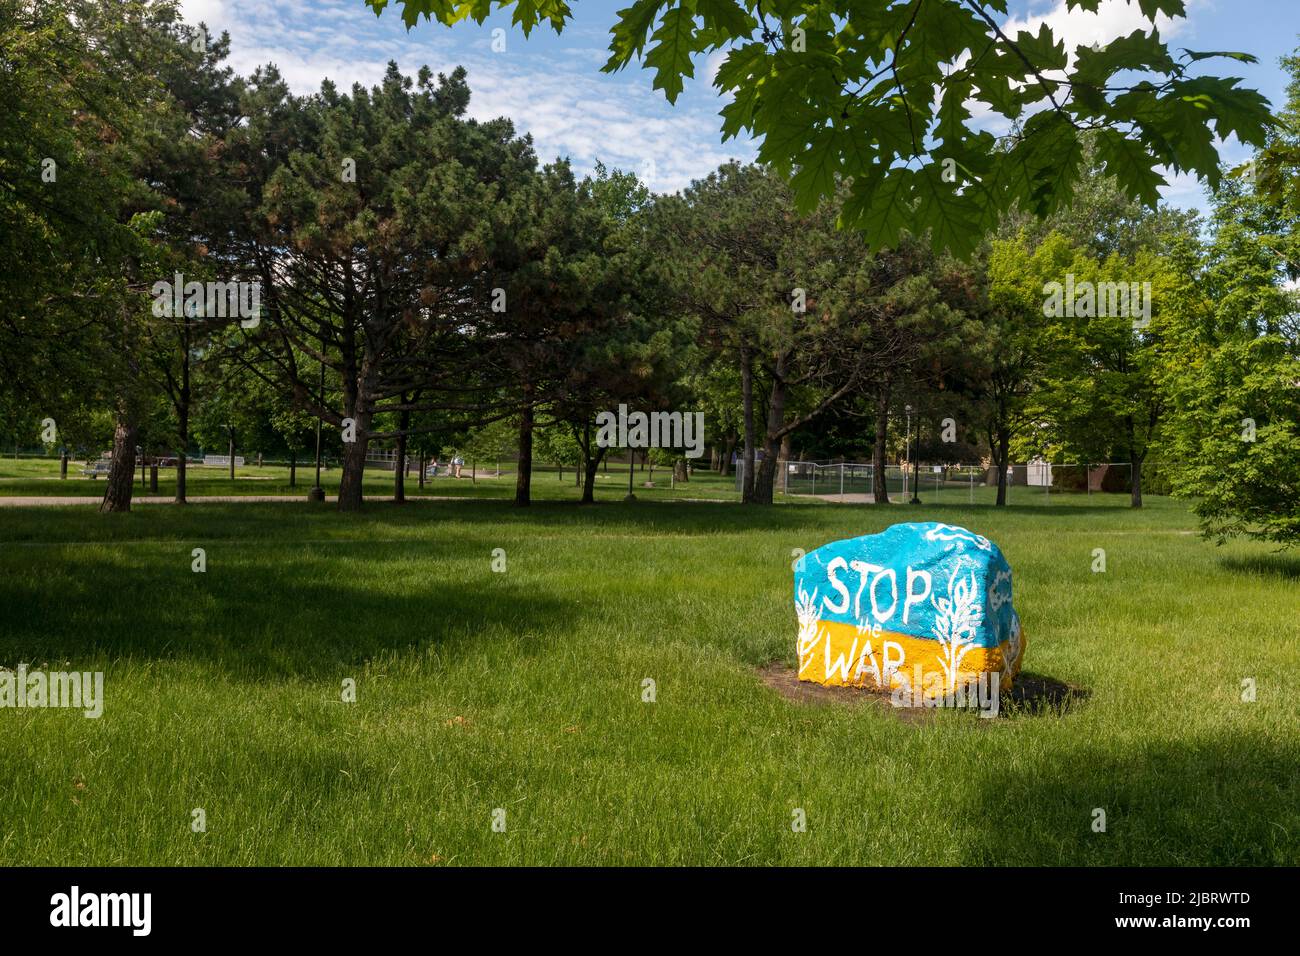 Detroit, Michigan - Ein Felsen auf dem Campus der Wayne State University, bemalt mit den Farben der ukrainischen Flagge mit dem Slogan „Stop the war“. Stockfoto